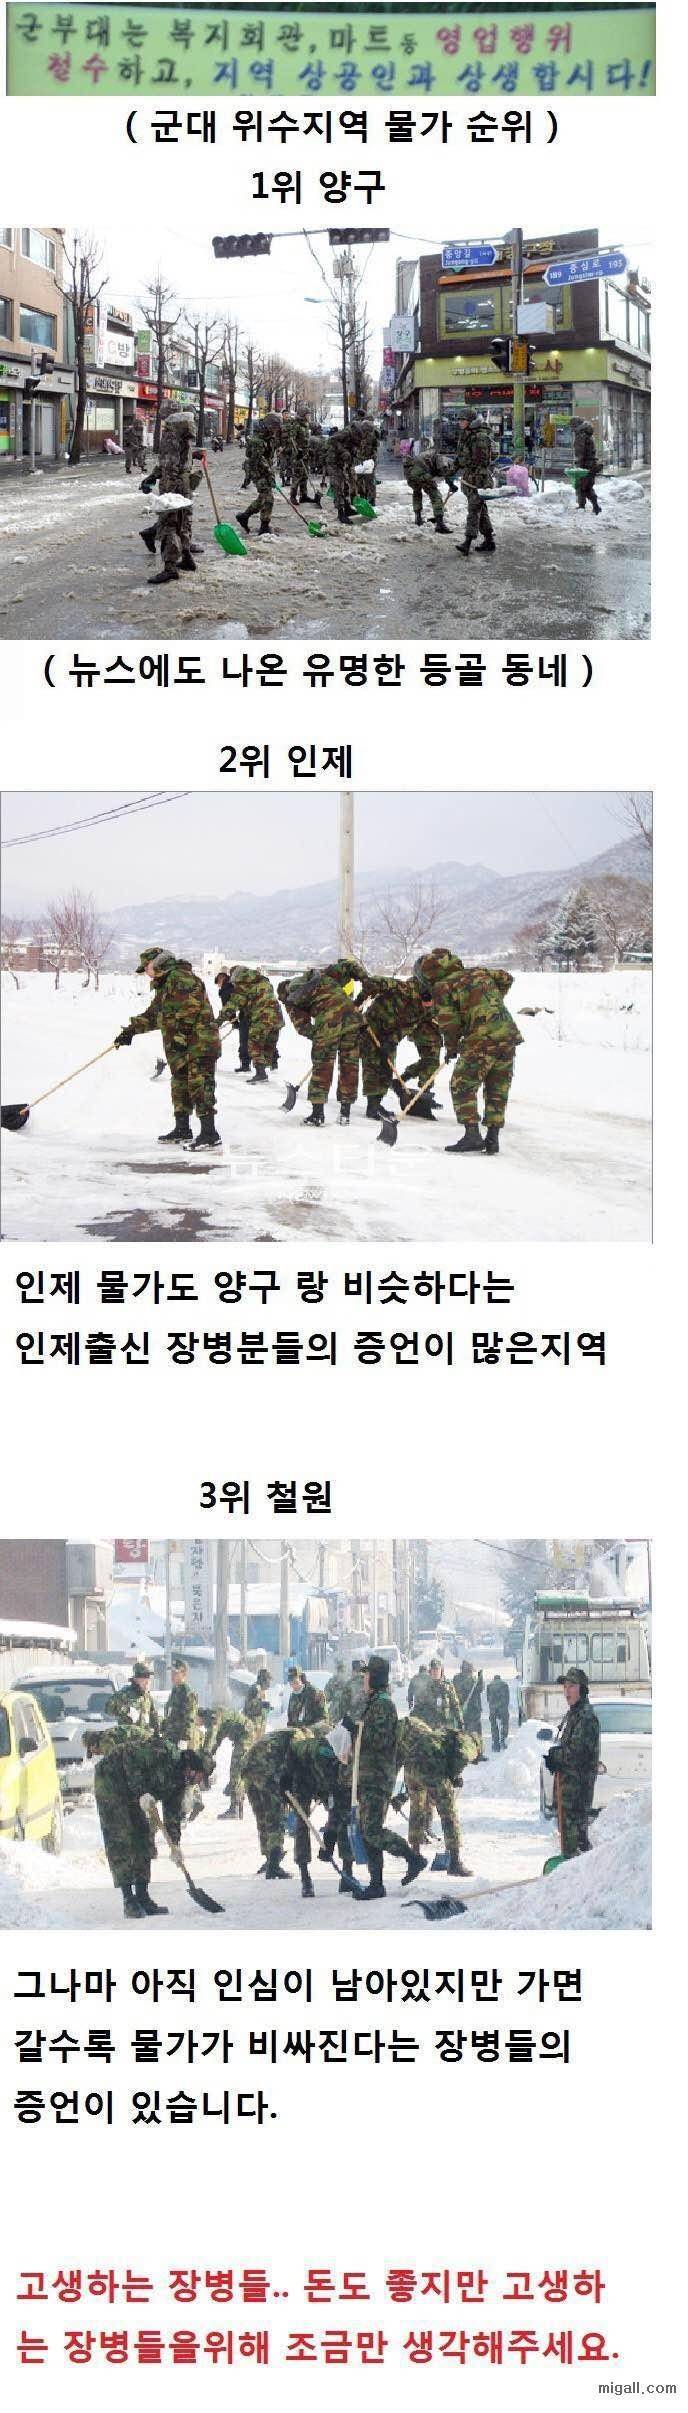 겨울이면 군인들 등쳐먹는 위수지역.jpg